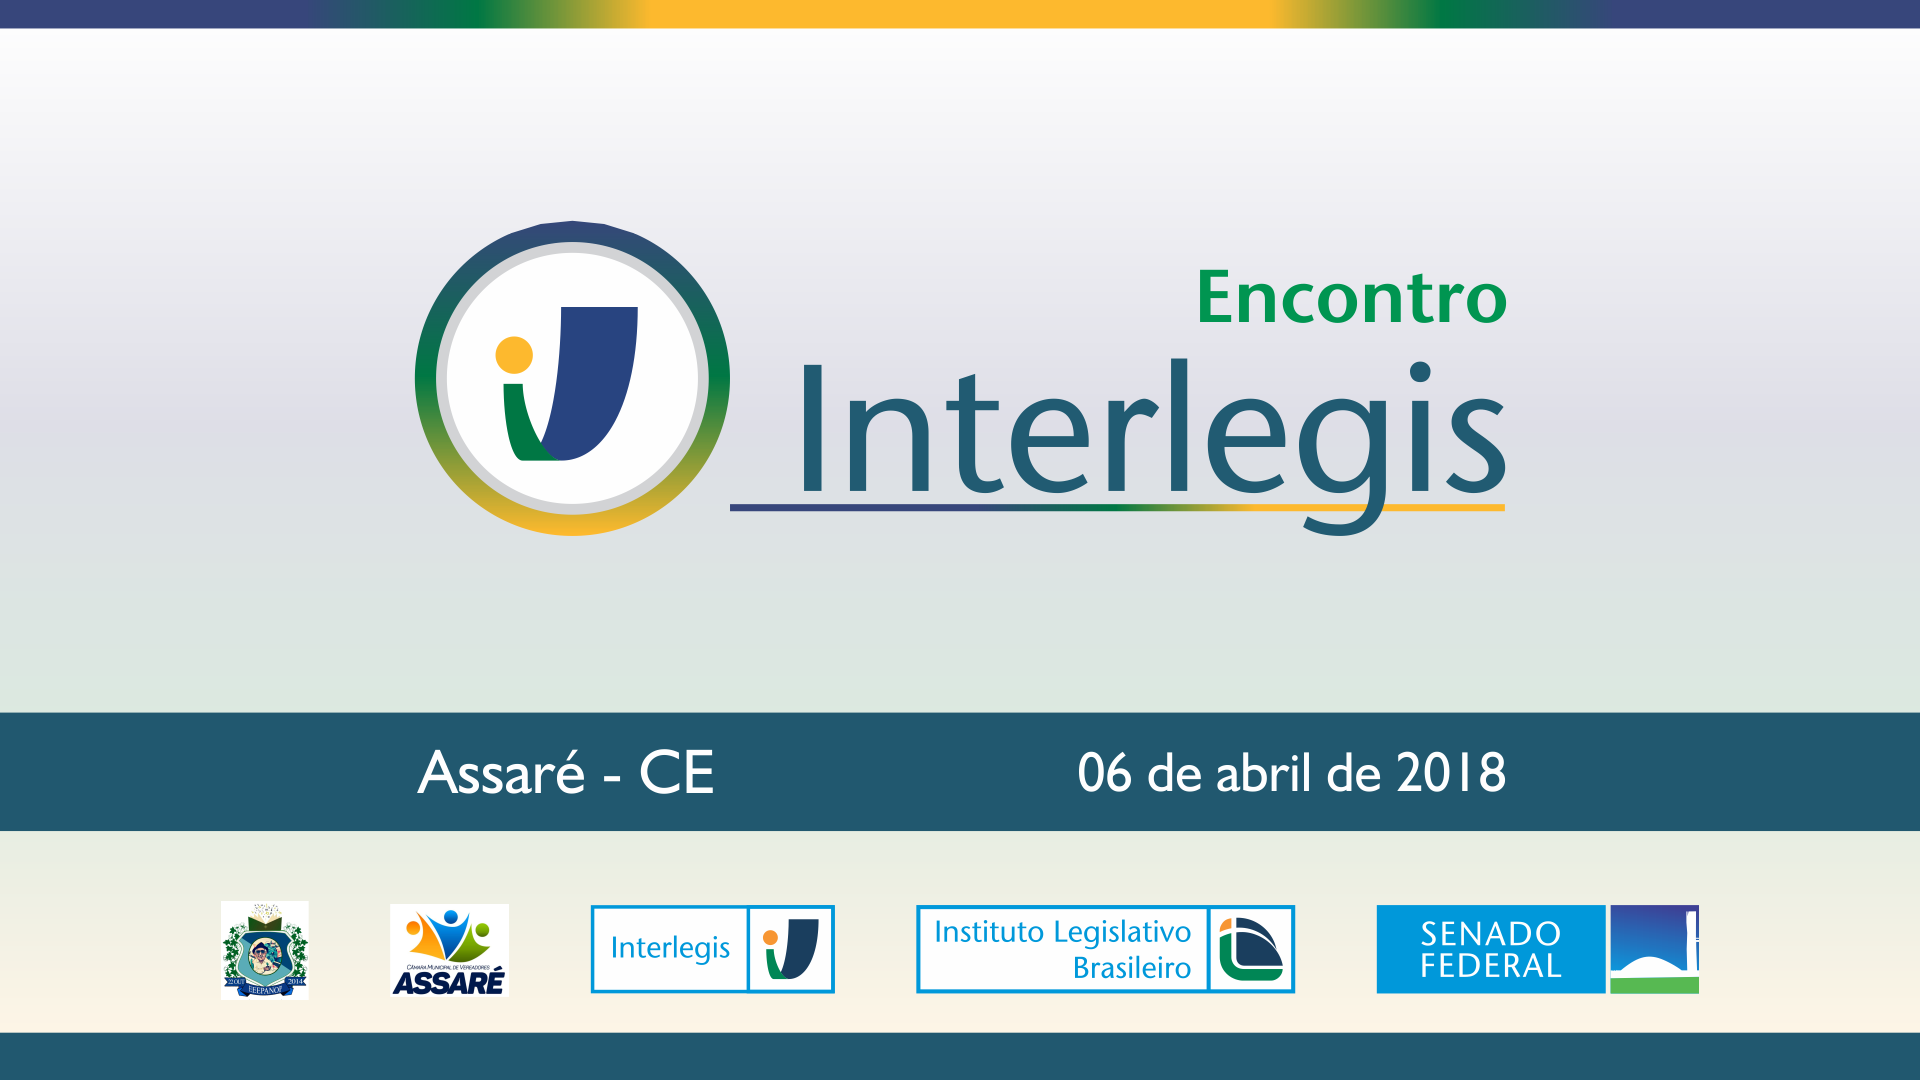 Instrumento para melhorar a transparência é tema do Encontro Interlegis em Assaré (CE)